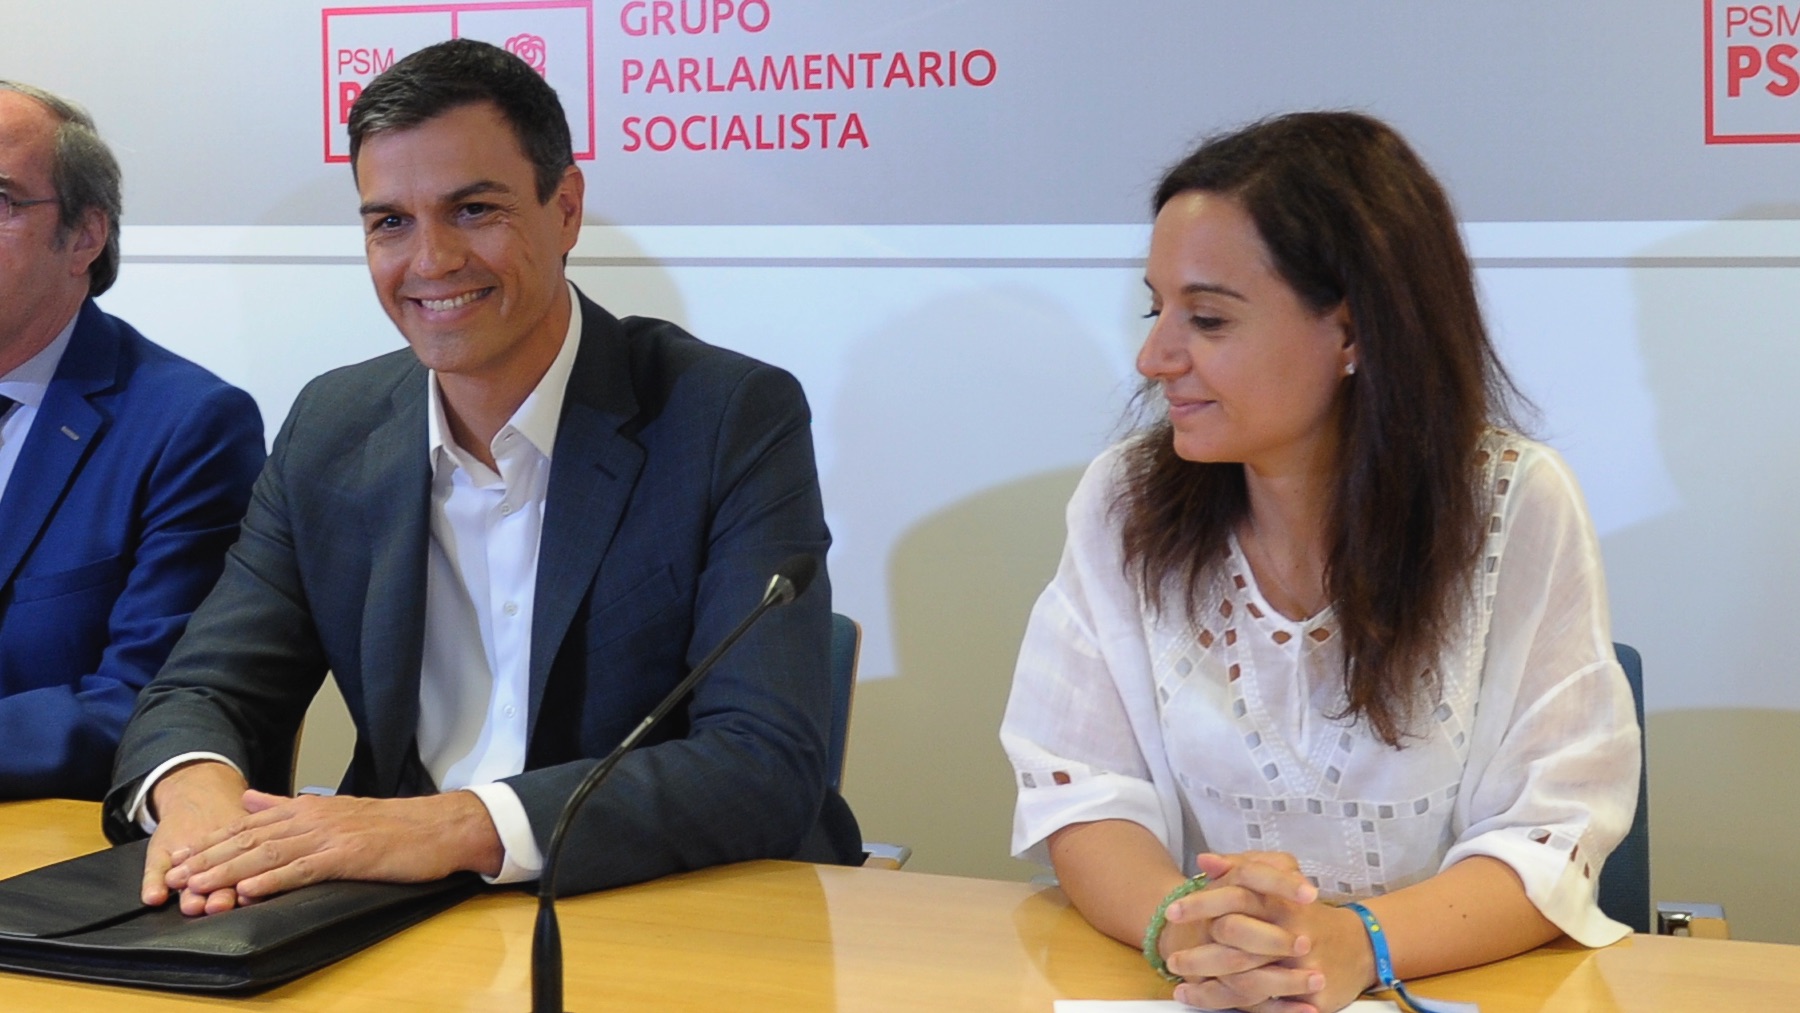 Pedro Sánchez y Sara Hernández en imagen de archivo. (Foto: PSOE)